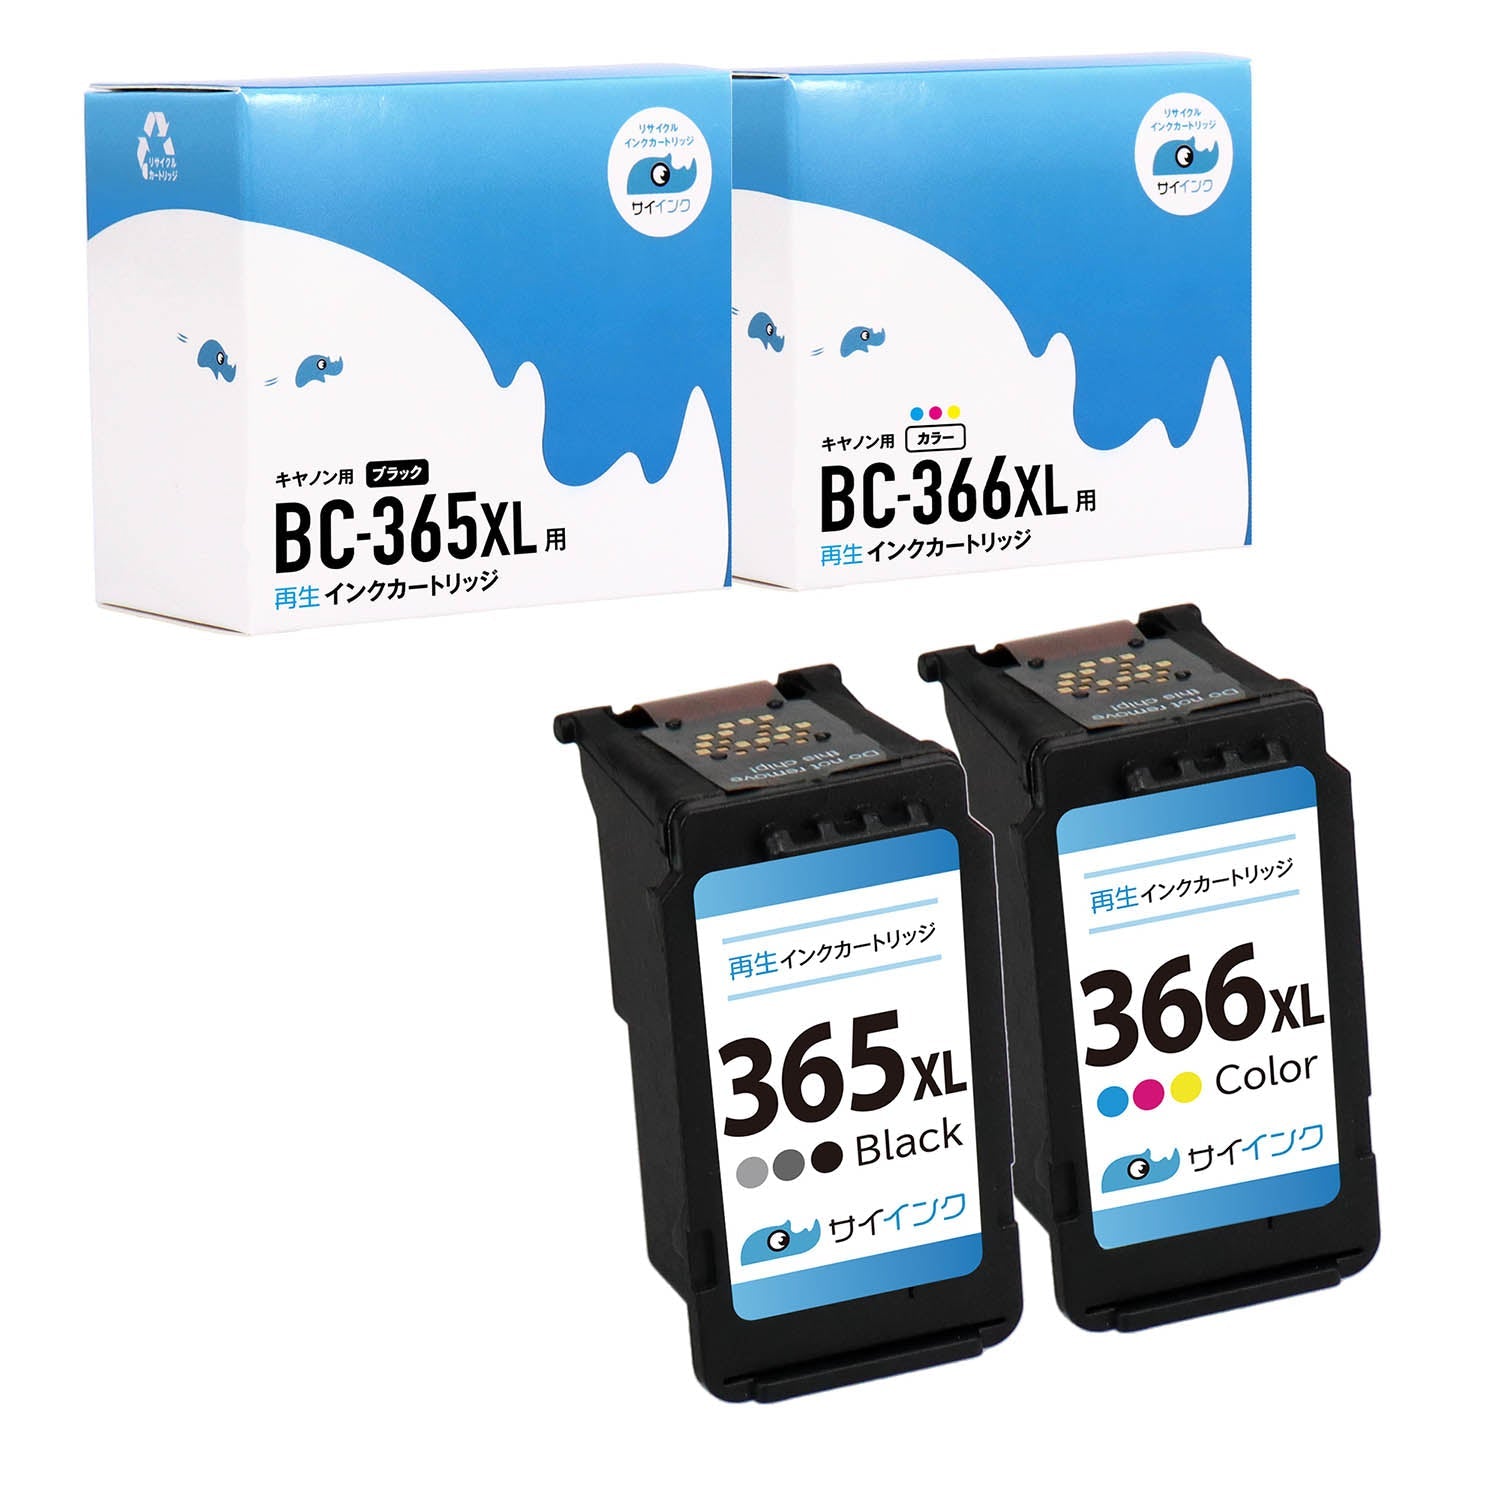 BC-365XL(大容量ブラック),BC-366XL(大容量3色カラー)セット